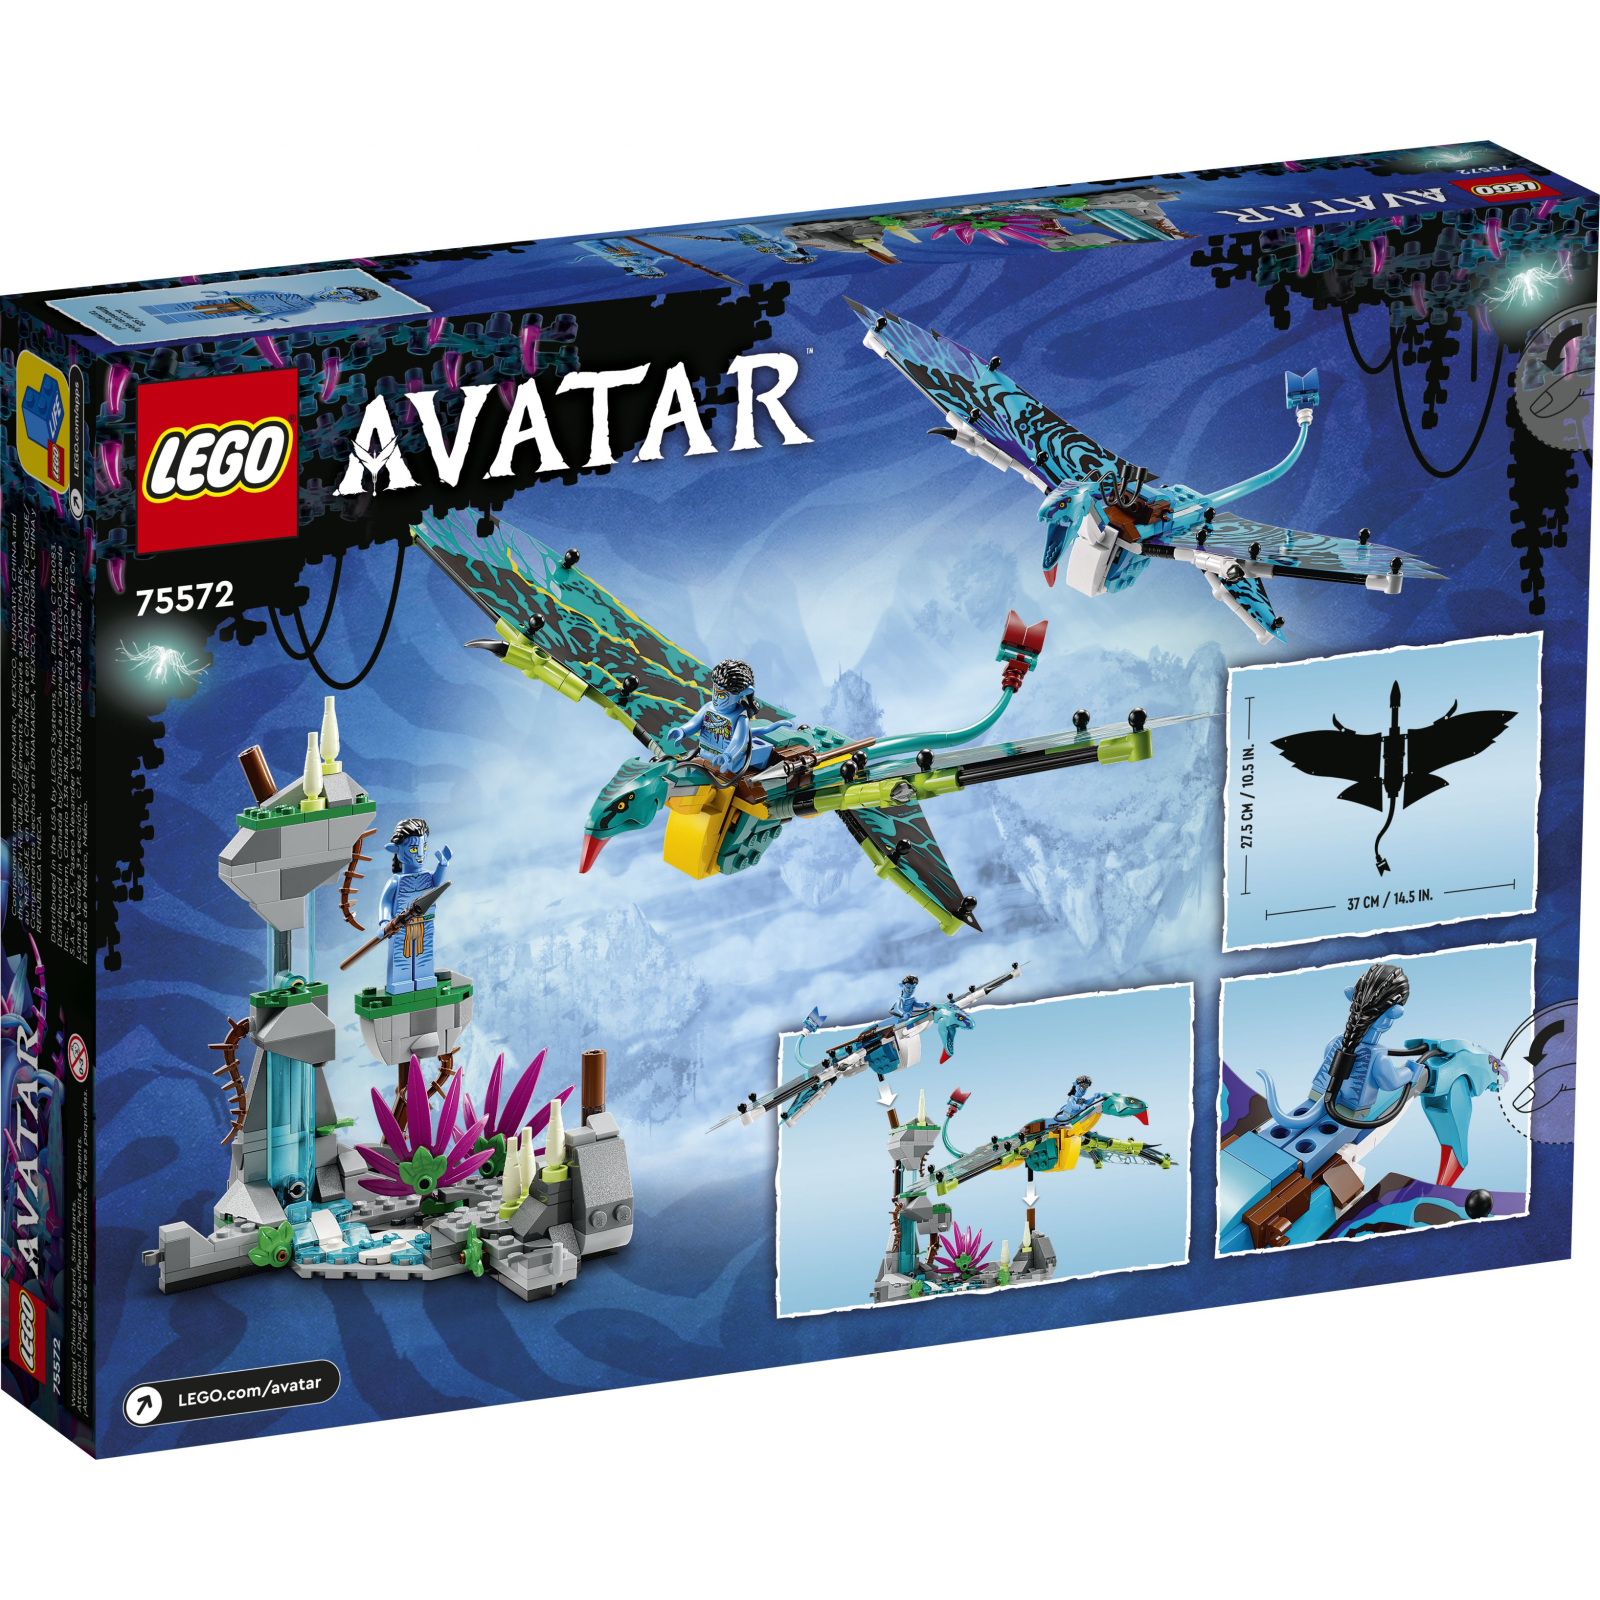 Конструктор LEGO Avatar Перший політ Джейка і Нейтірі на Банши 572 деталей (75572) зображення 7